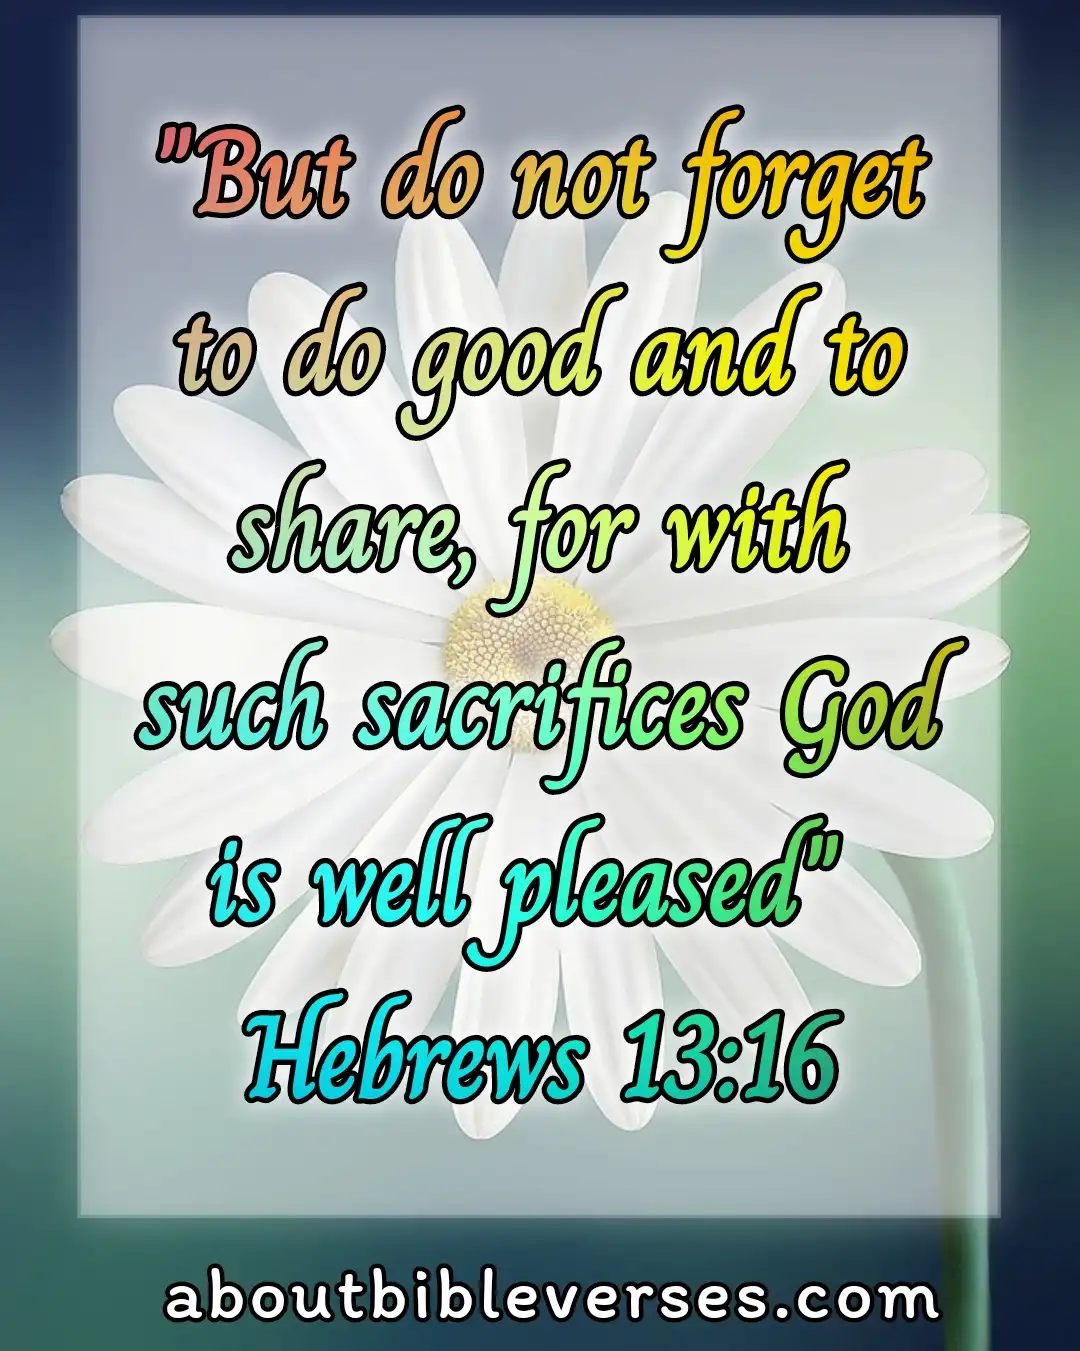 Today Bible Verse (Hebrews 13:16)